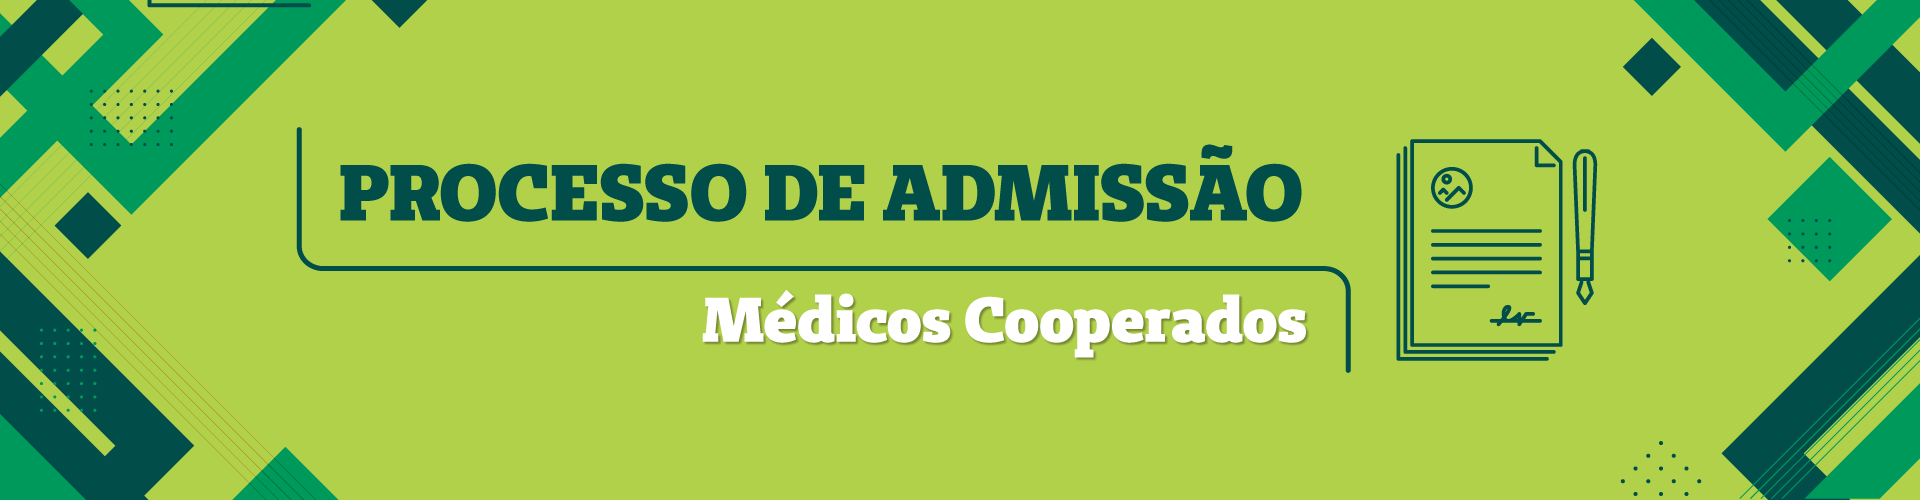 Processo de admissão para cooperativação de médicos